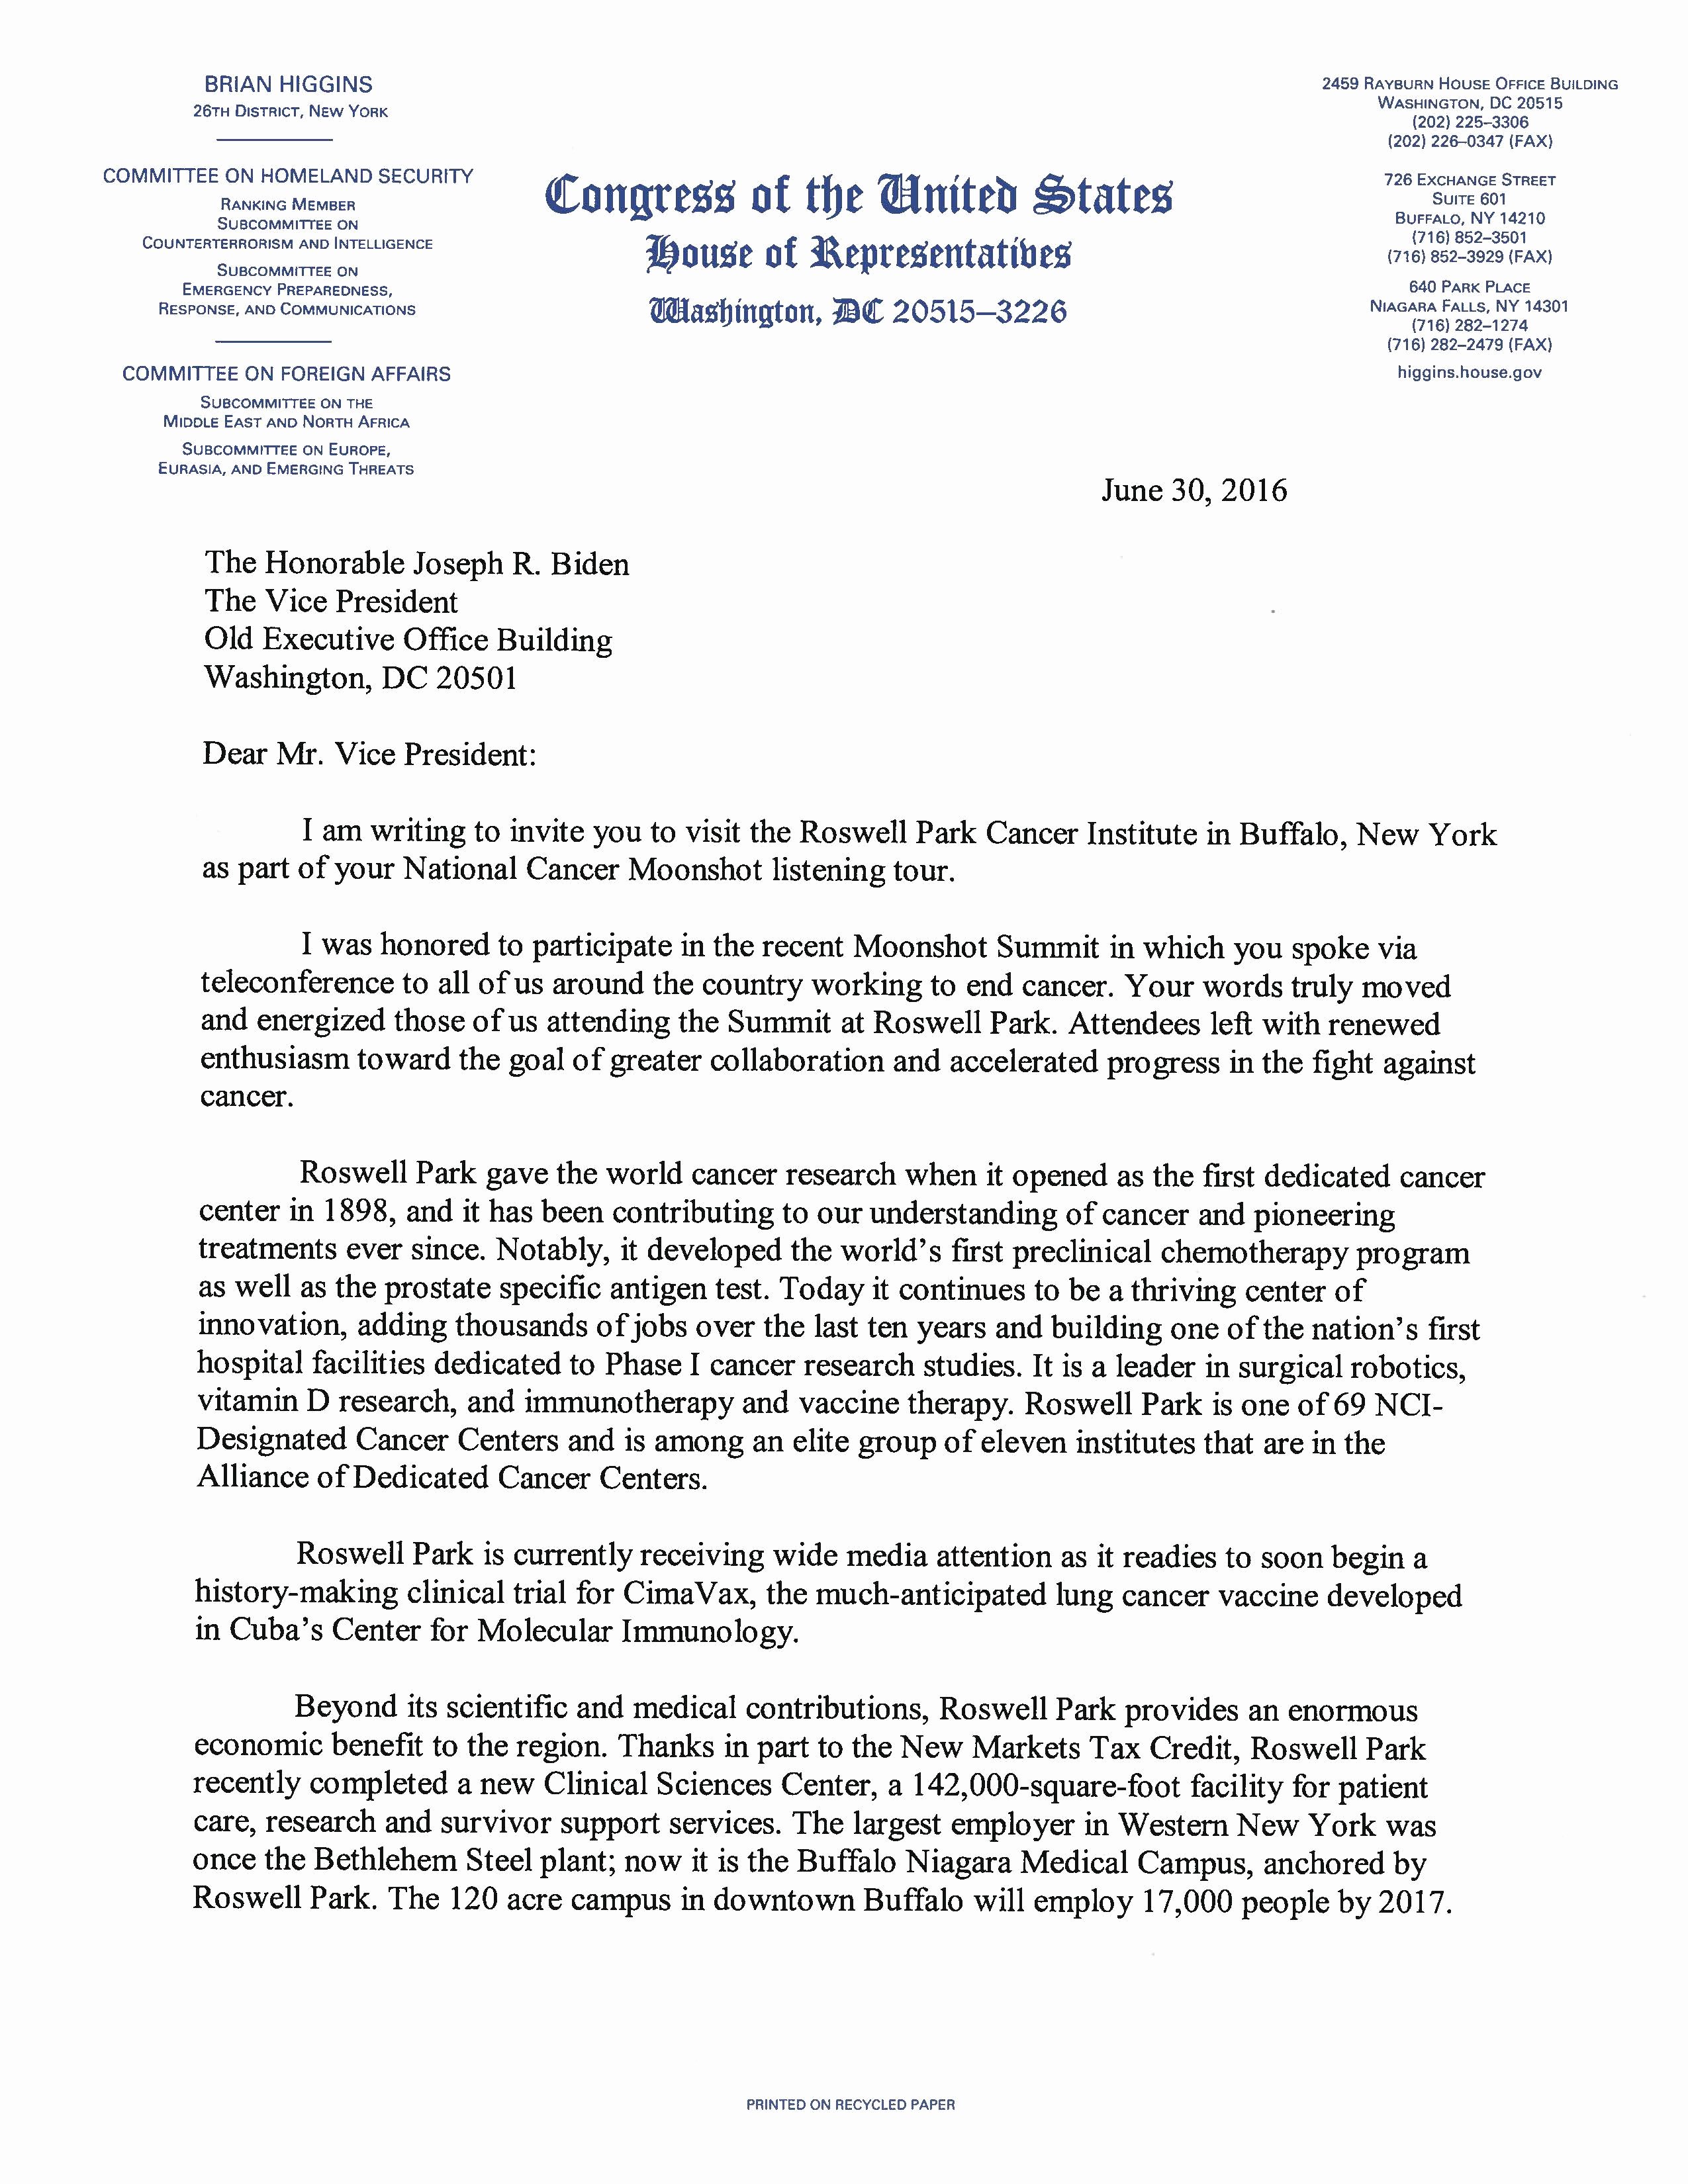 Letter to President format New Letter to Vice President Biden